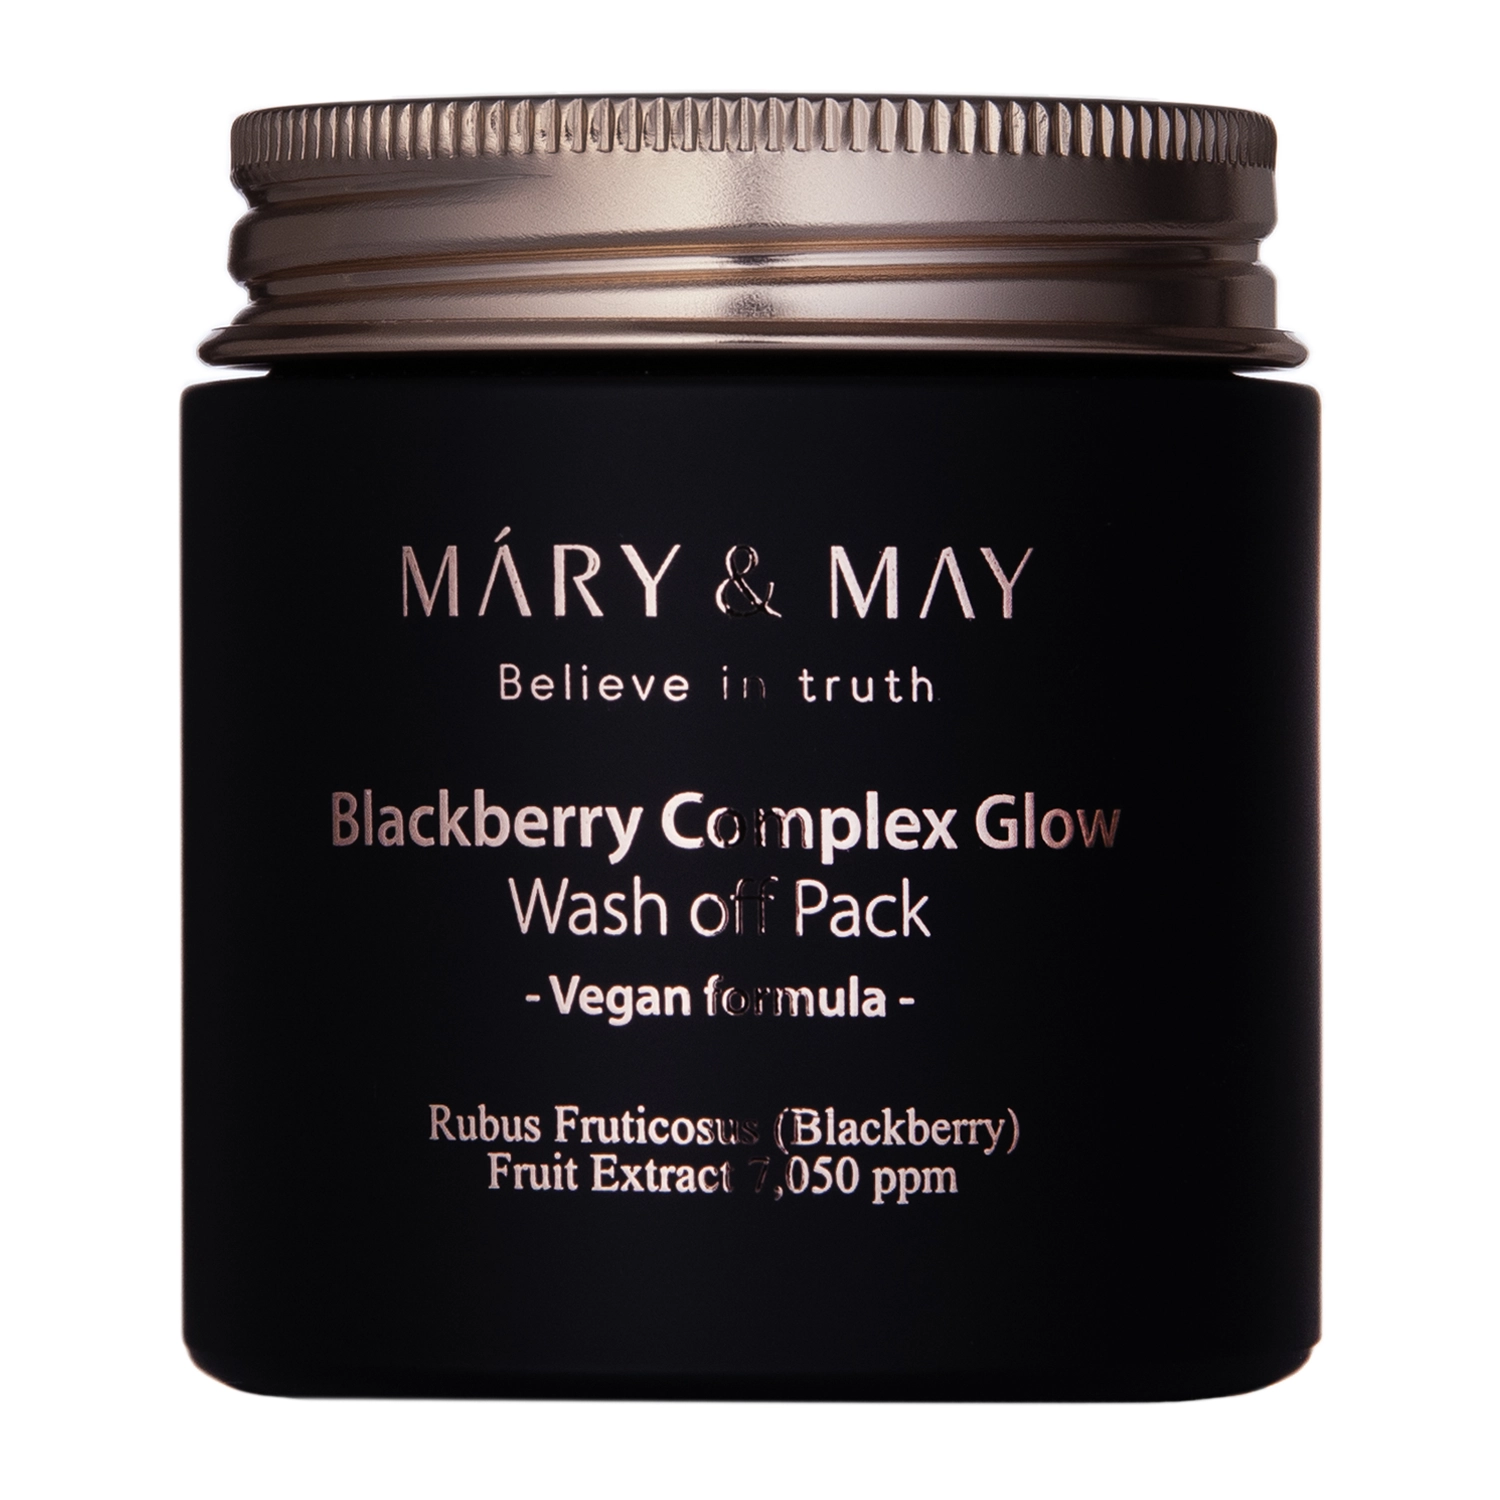 Mary&May - Vegan Blackberry Complex Glow Wash off Pack - Rozświetlająca Maseczka Glinkowa - 125g